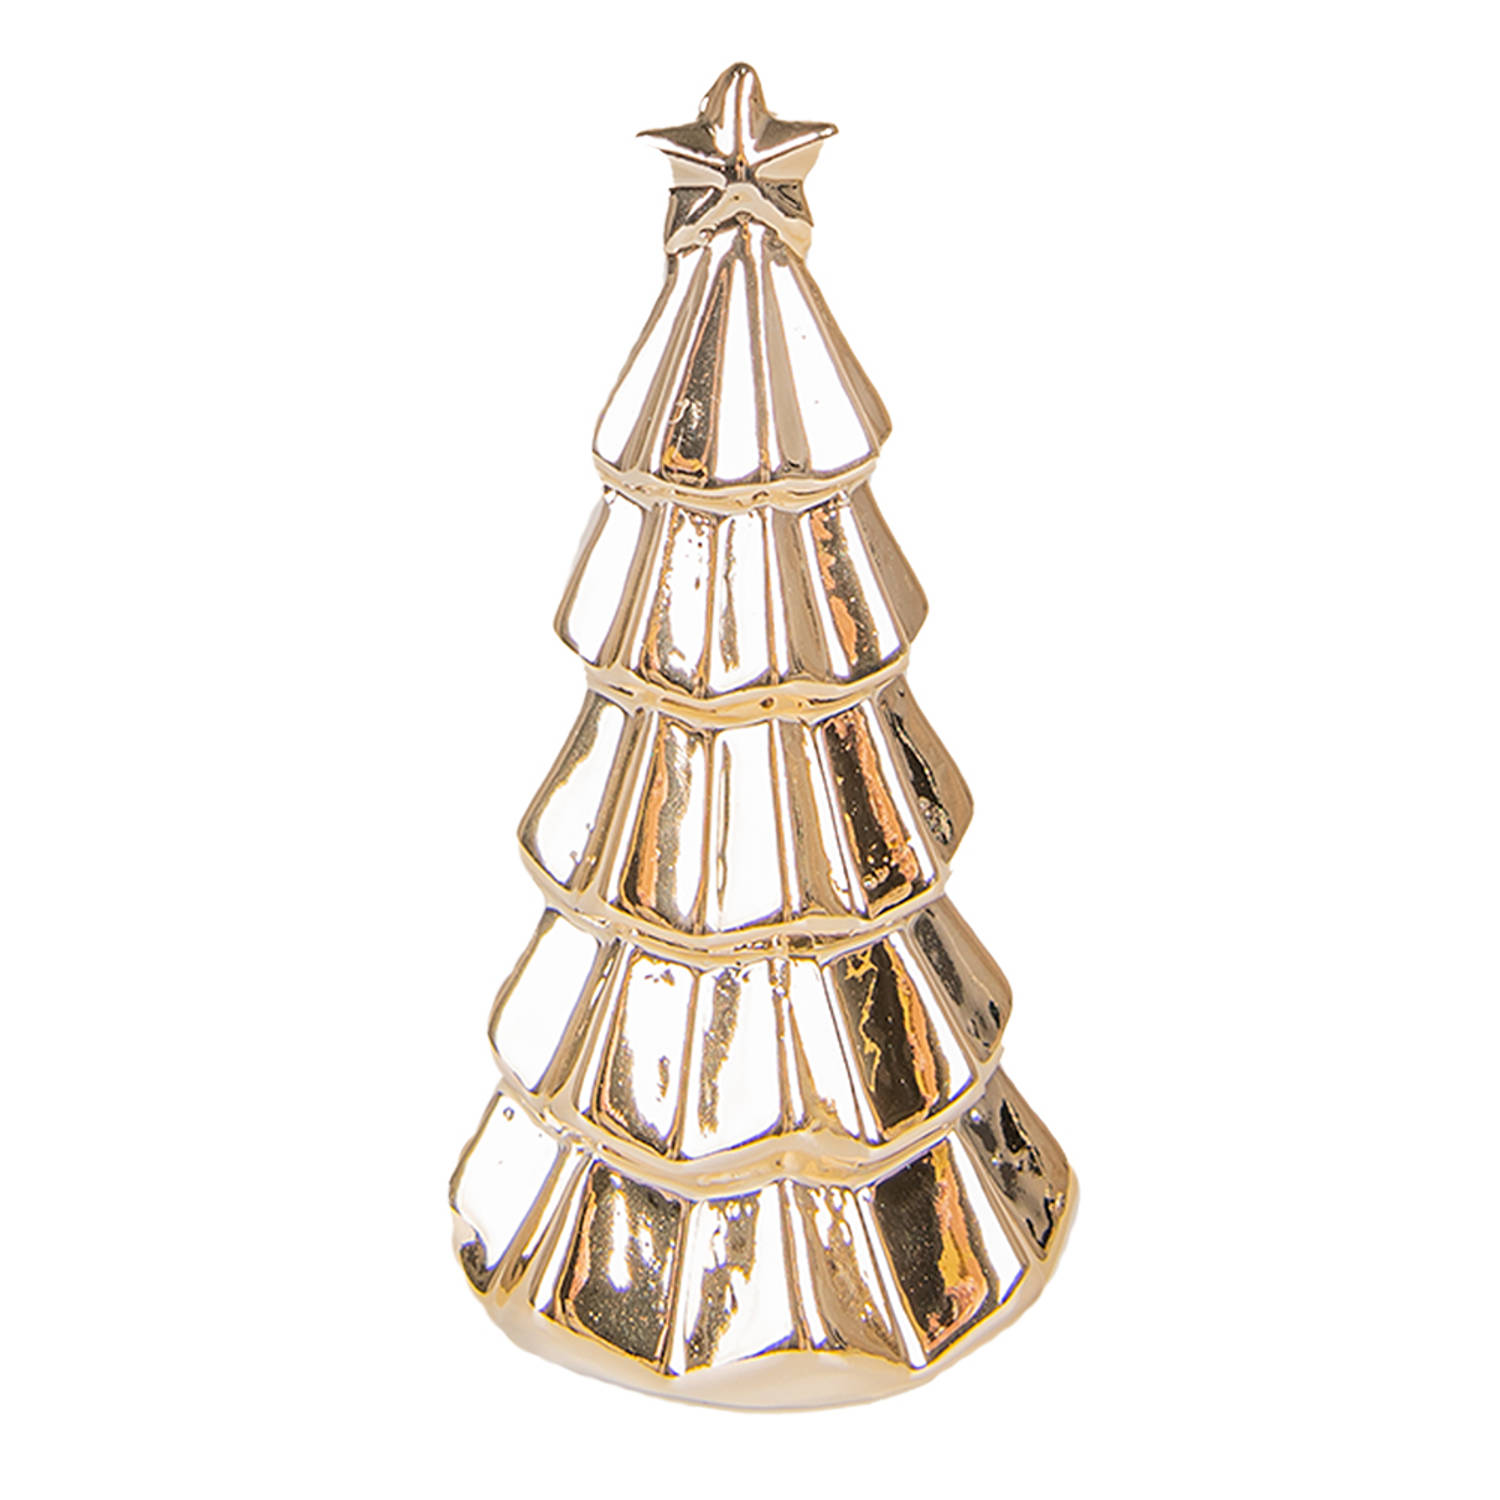 HAES DECO - Decoratieve Kerstboom - Formaat Ø 6x11 cm - Kleur Goudkleurig - Materiaal Porselein - Kerstversiering, Kerstdecoratie